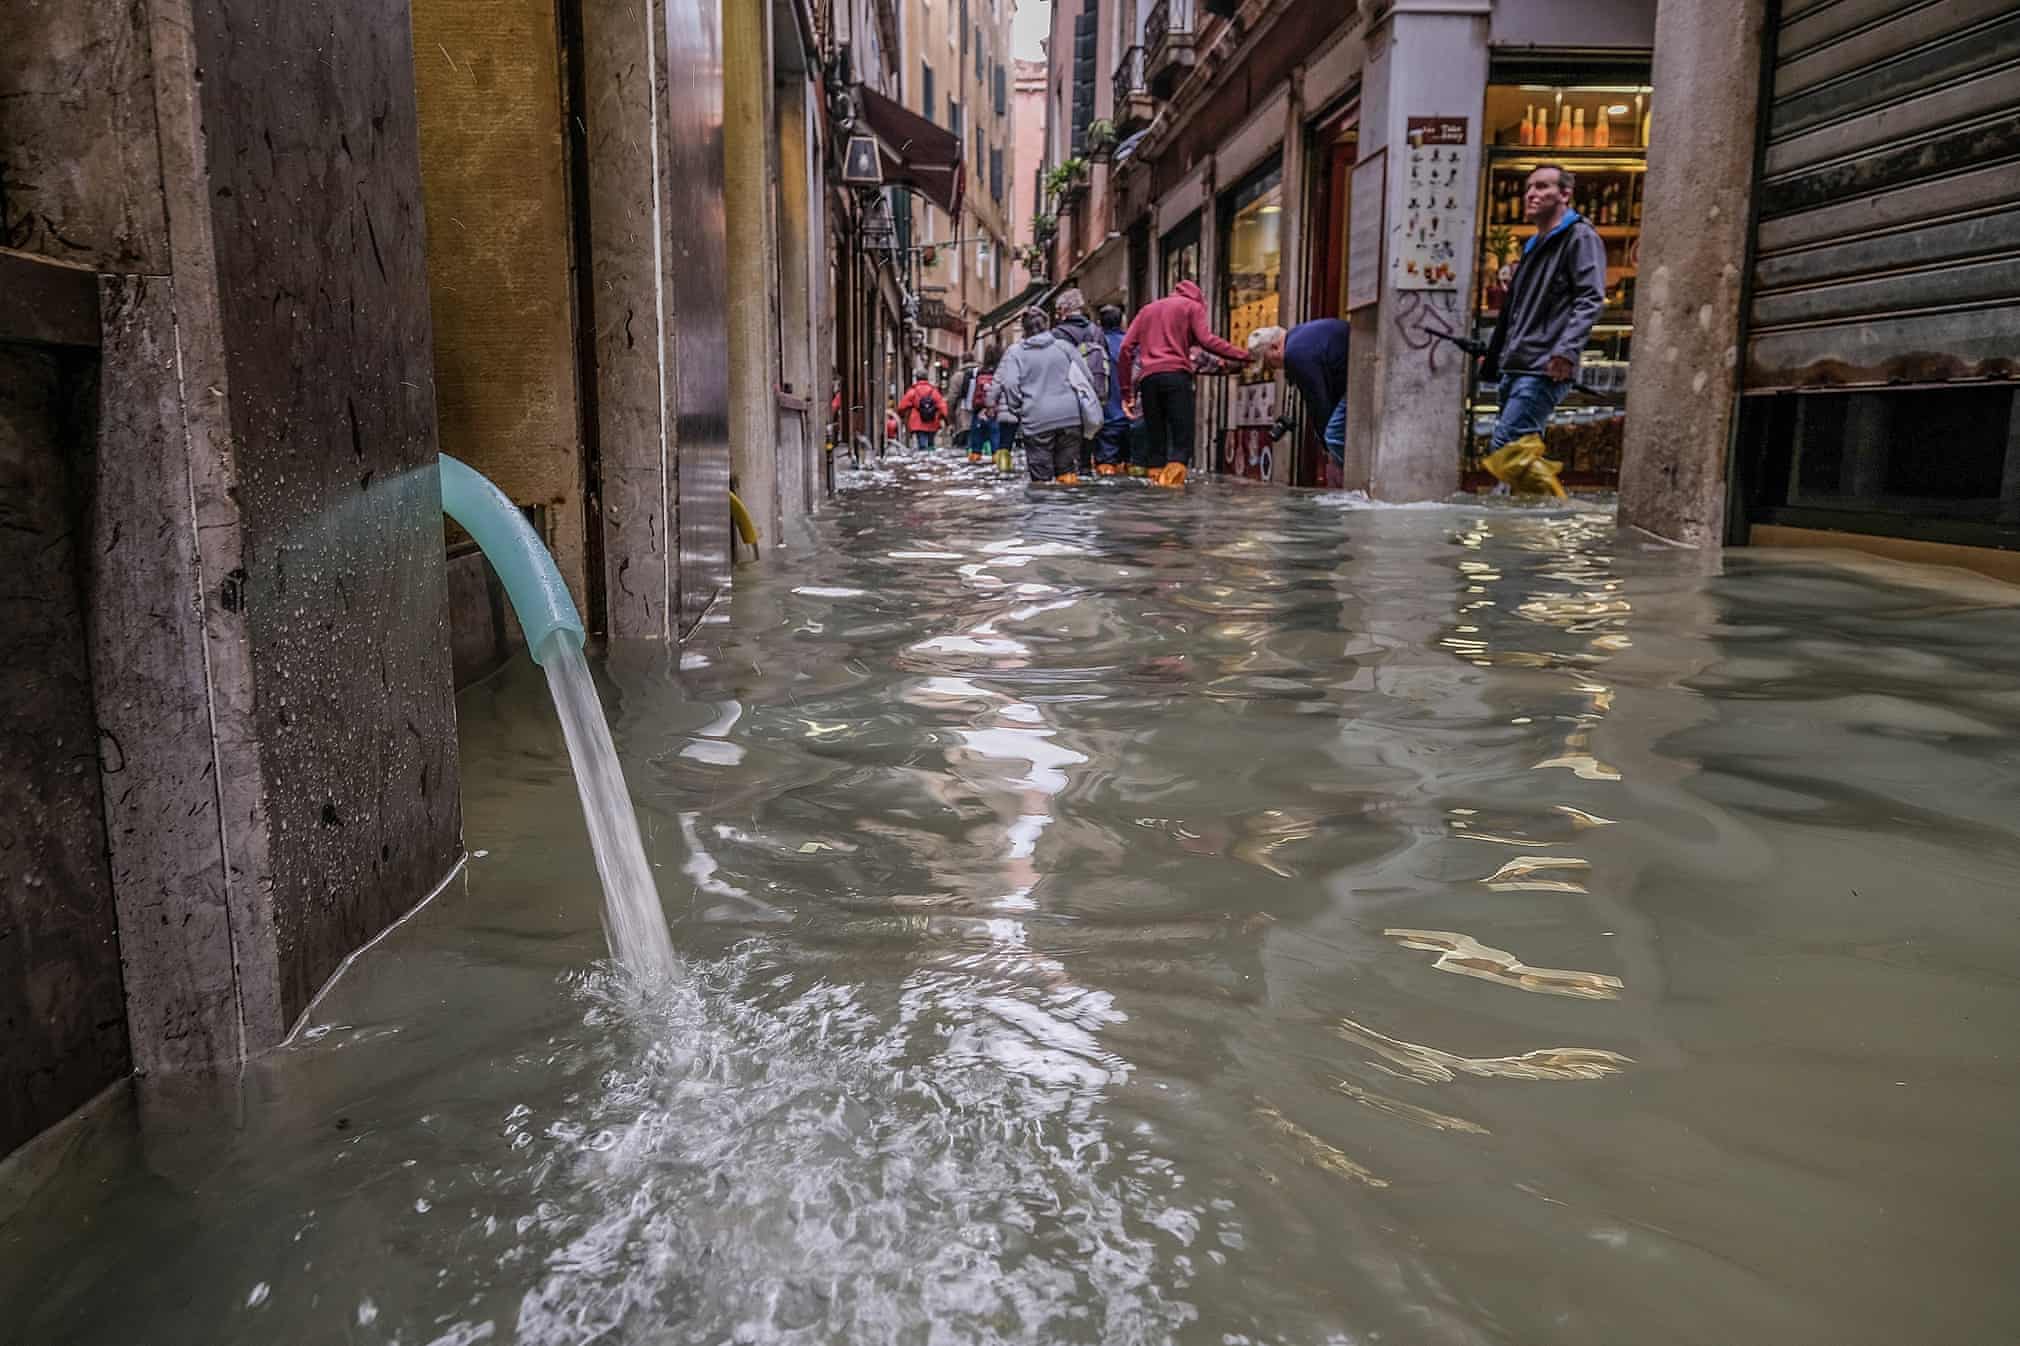 Неужели Венеция медленно уходит под воду? Смотрите новые фото